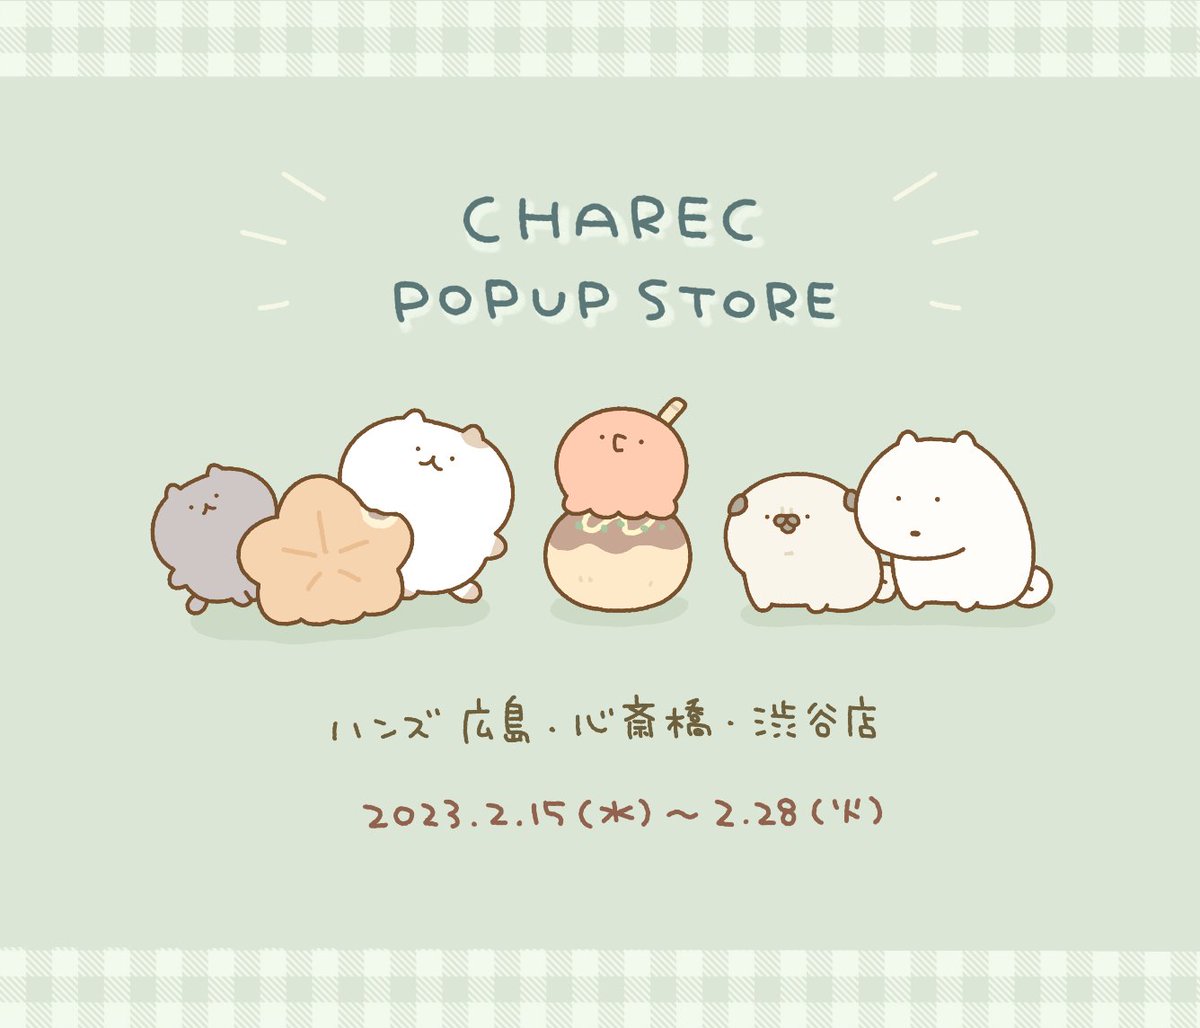 \イベントのおしらせ/

2月にハンズで開催される「CHAREC POPUP STORE」に参加します!
素敵クリエイター様たちと一緒のイベントで、渋谷店・心斎橋店・広島店の3店舗でグッズを販売いたします。

グッズの詳細はまた近くなったらお知らせします〜!たのしみ!
#CHAREC 